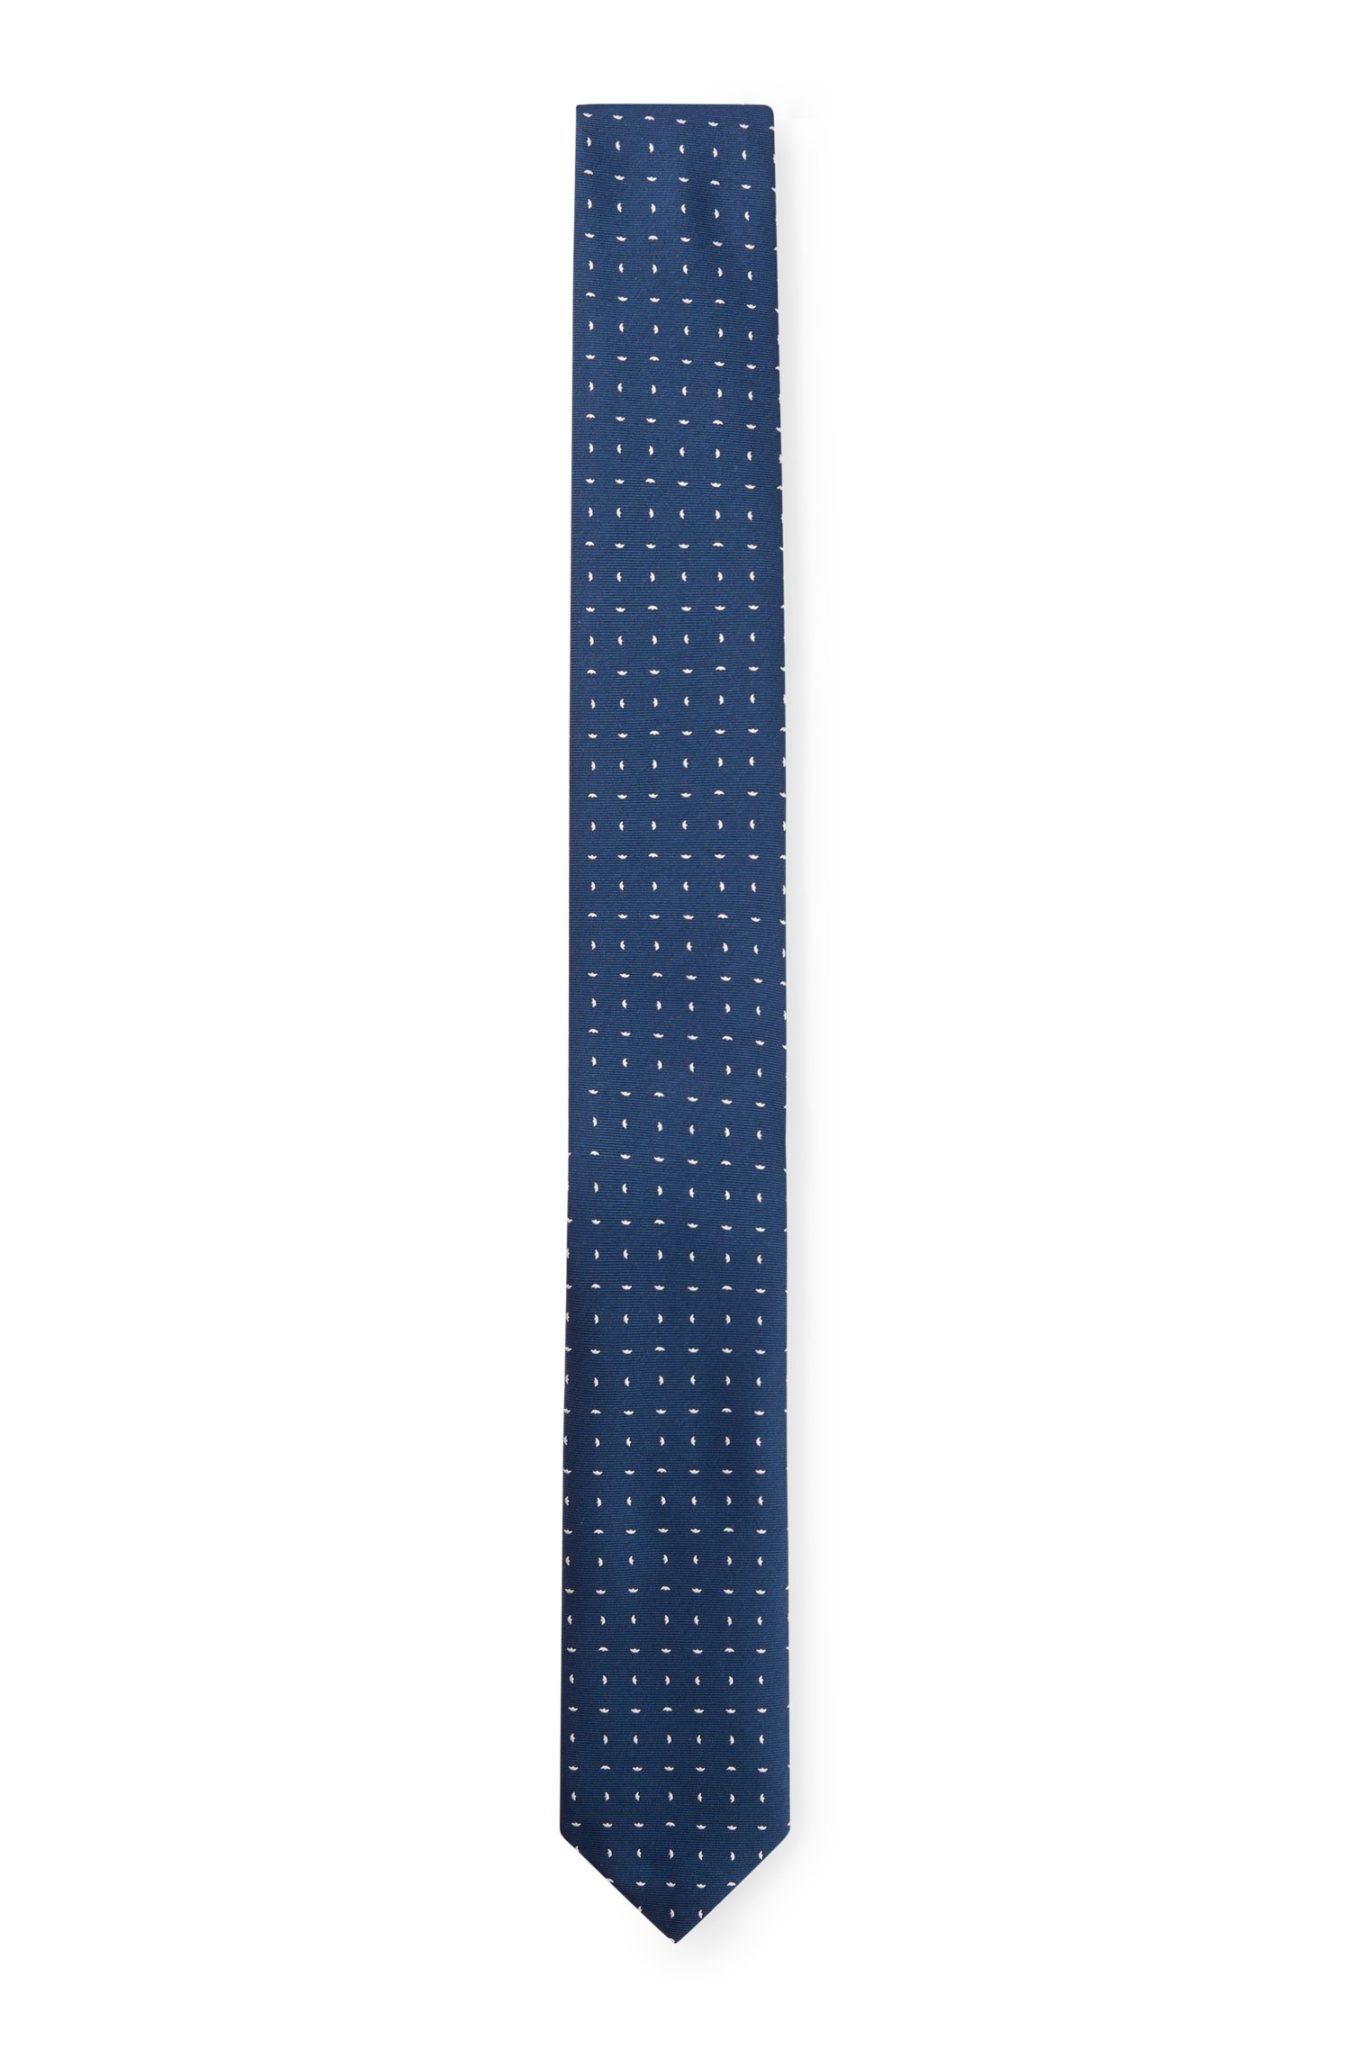 Hugo Boss Cravate à motif confectionnée en Italie et pochette de voyage